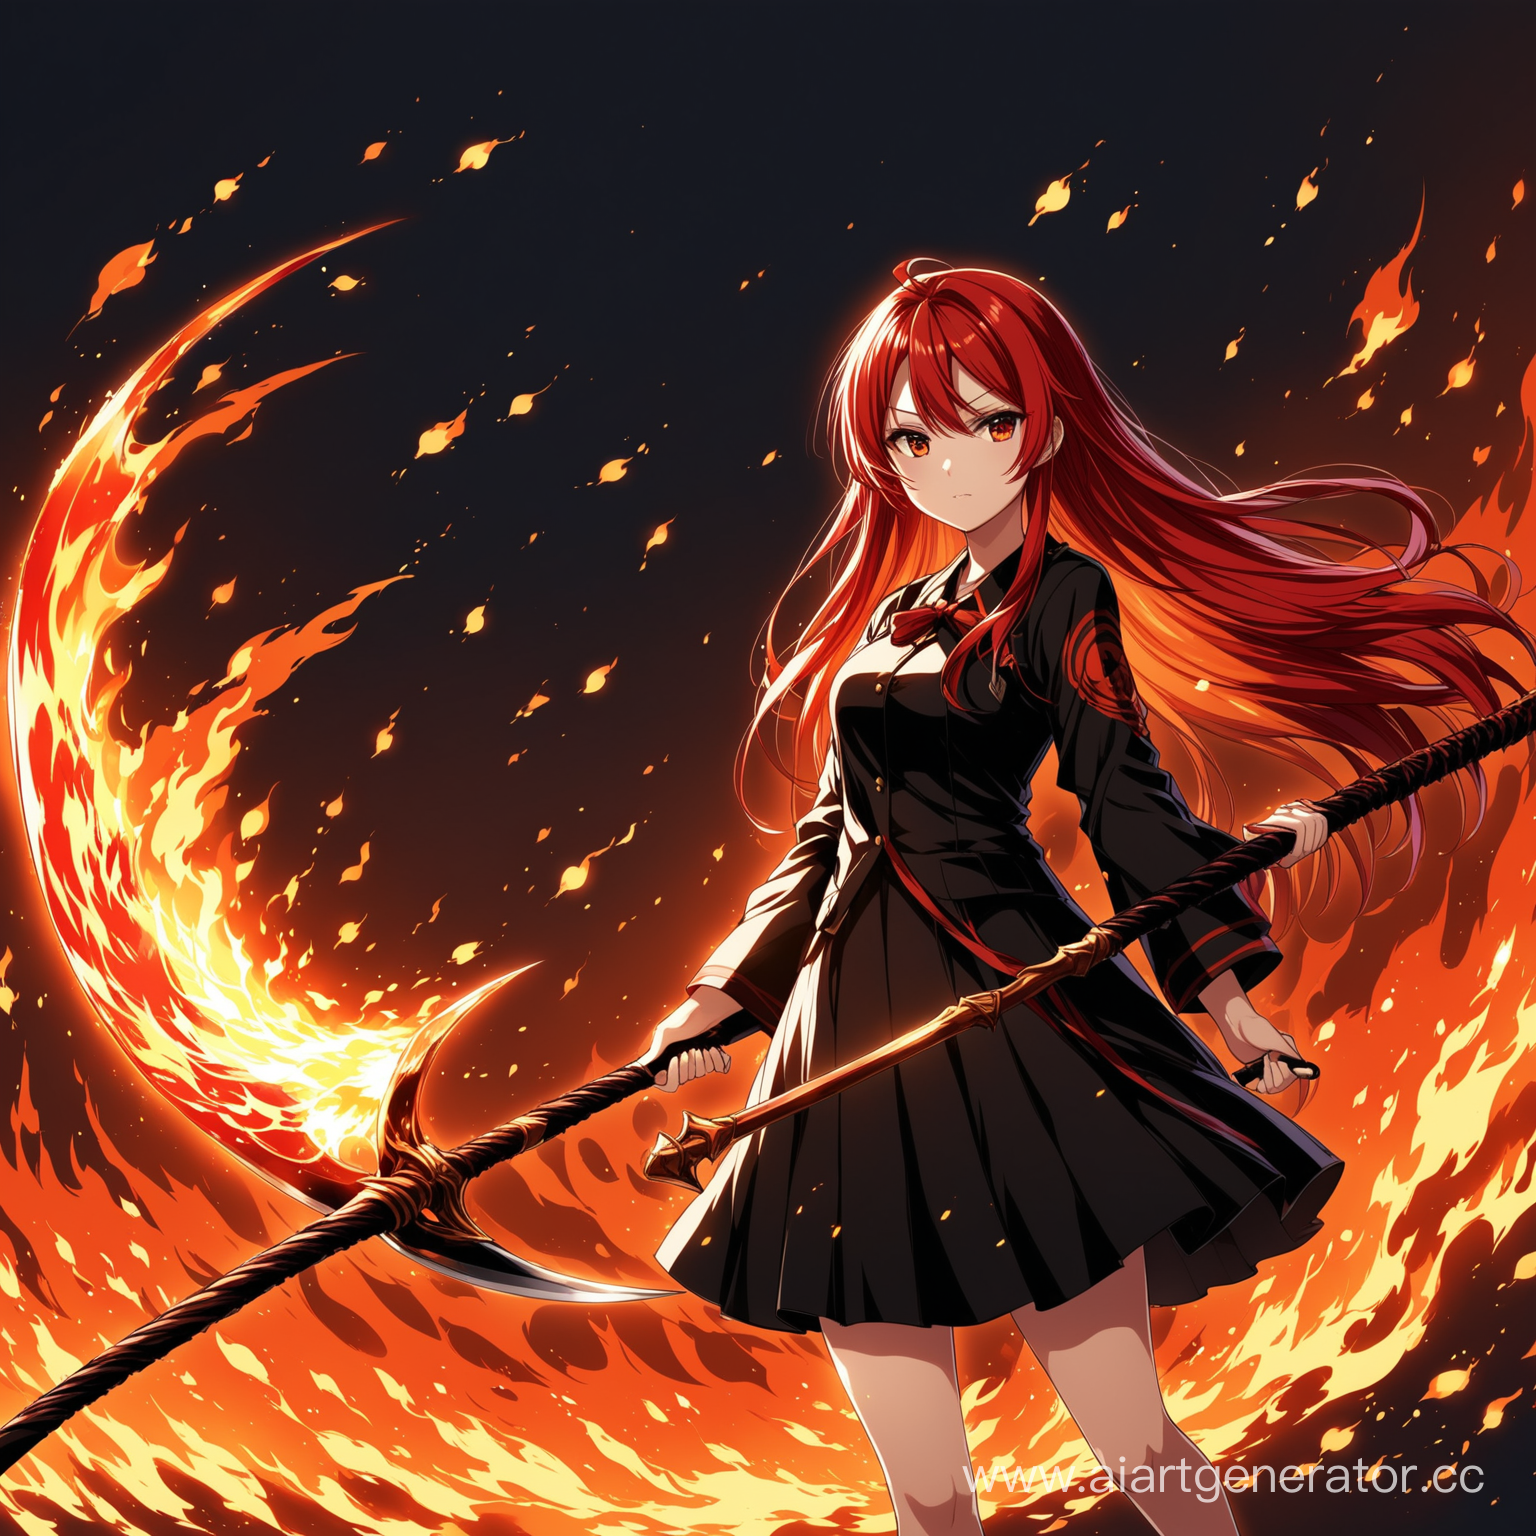 аниме девушка с рыжими волосами и огненной косой в руке
